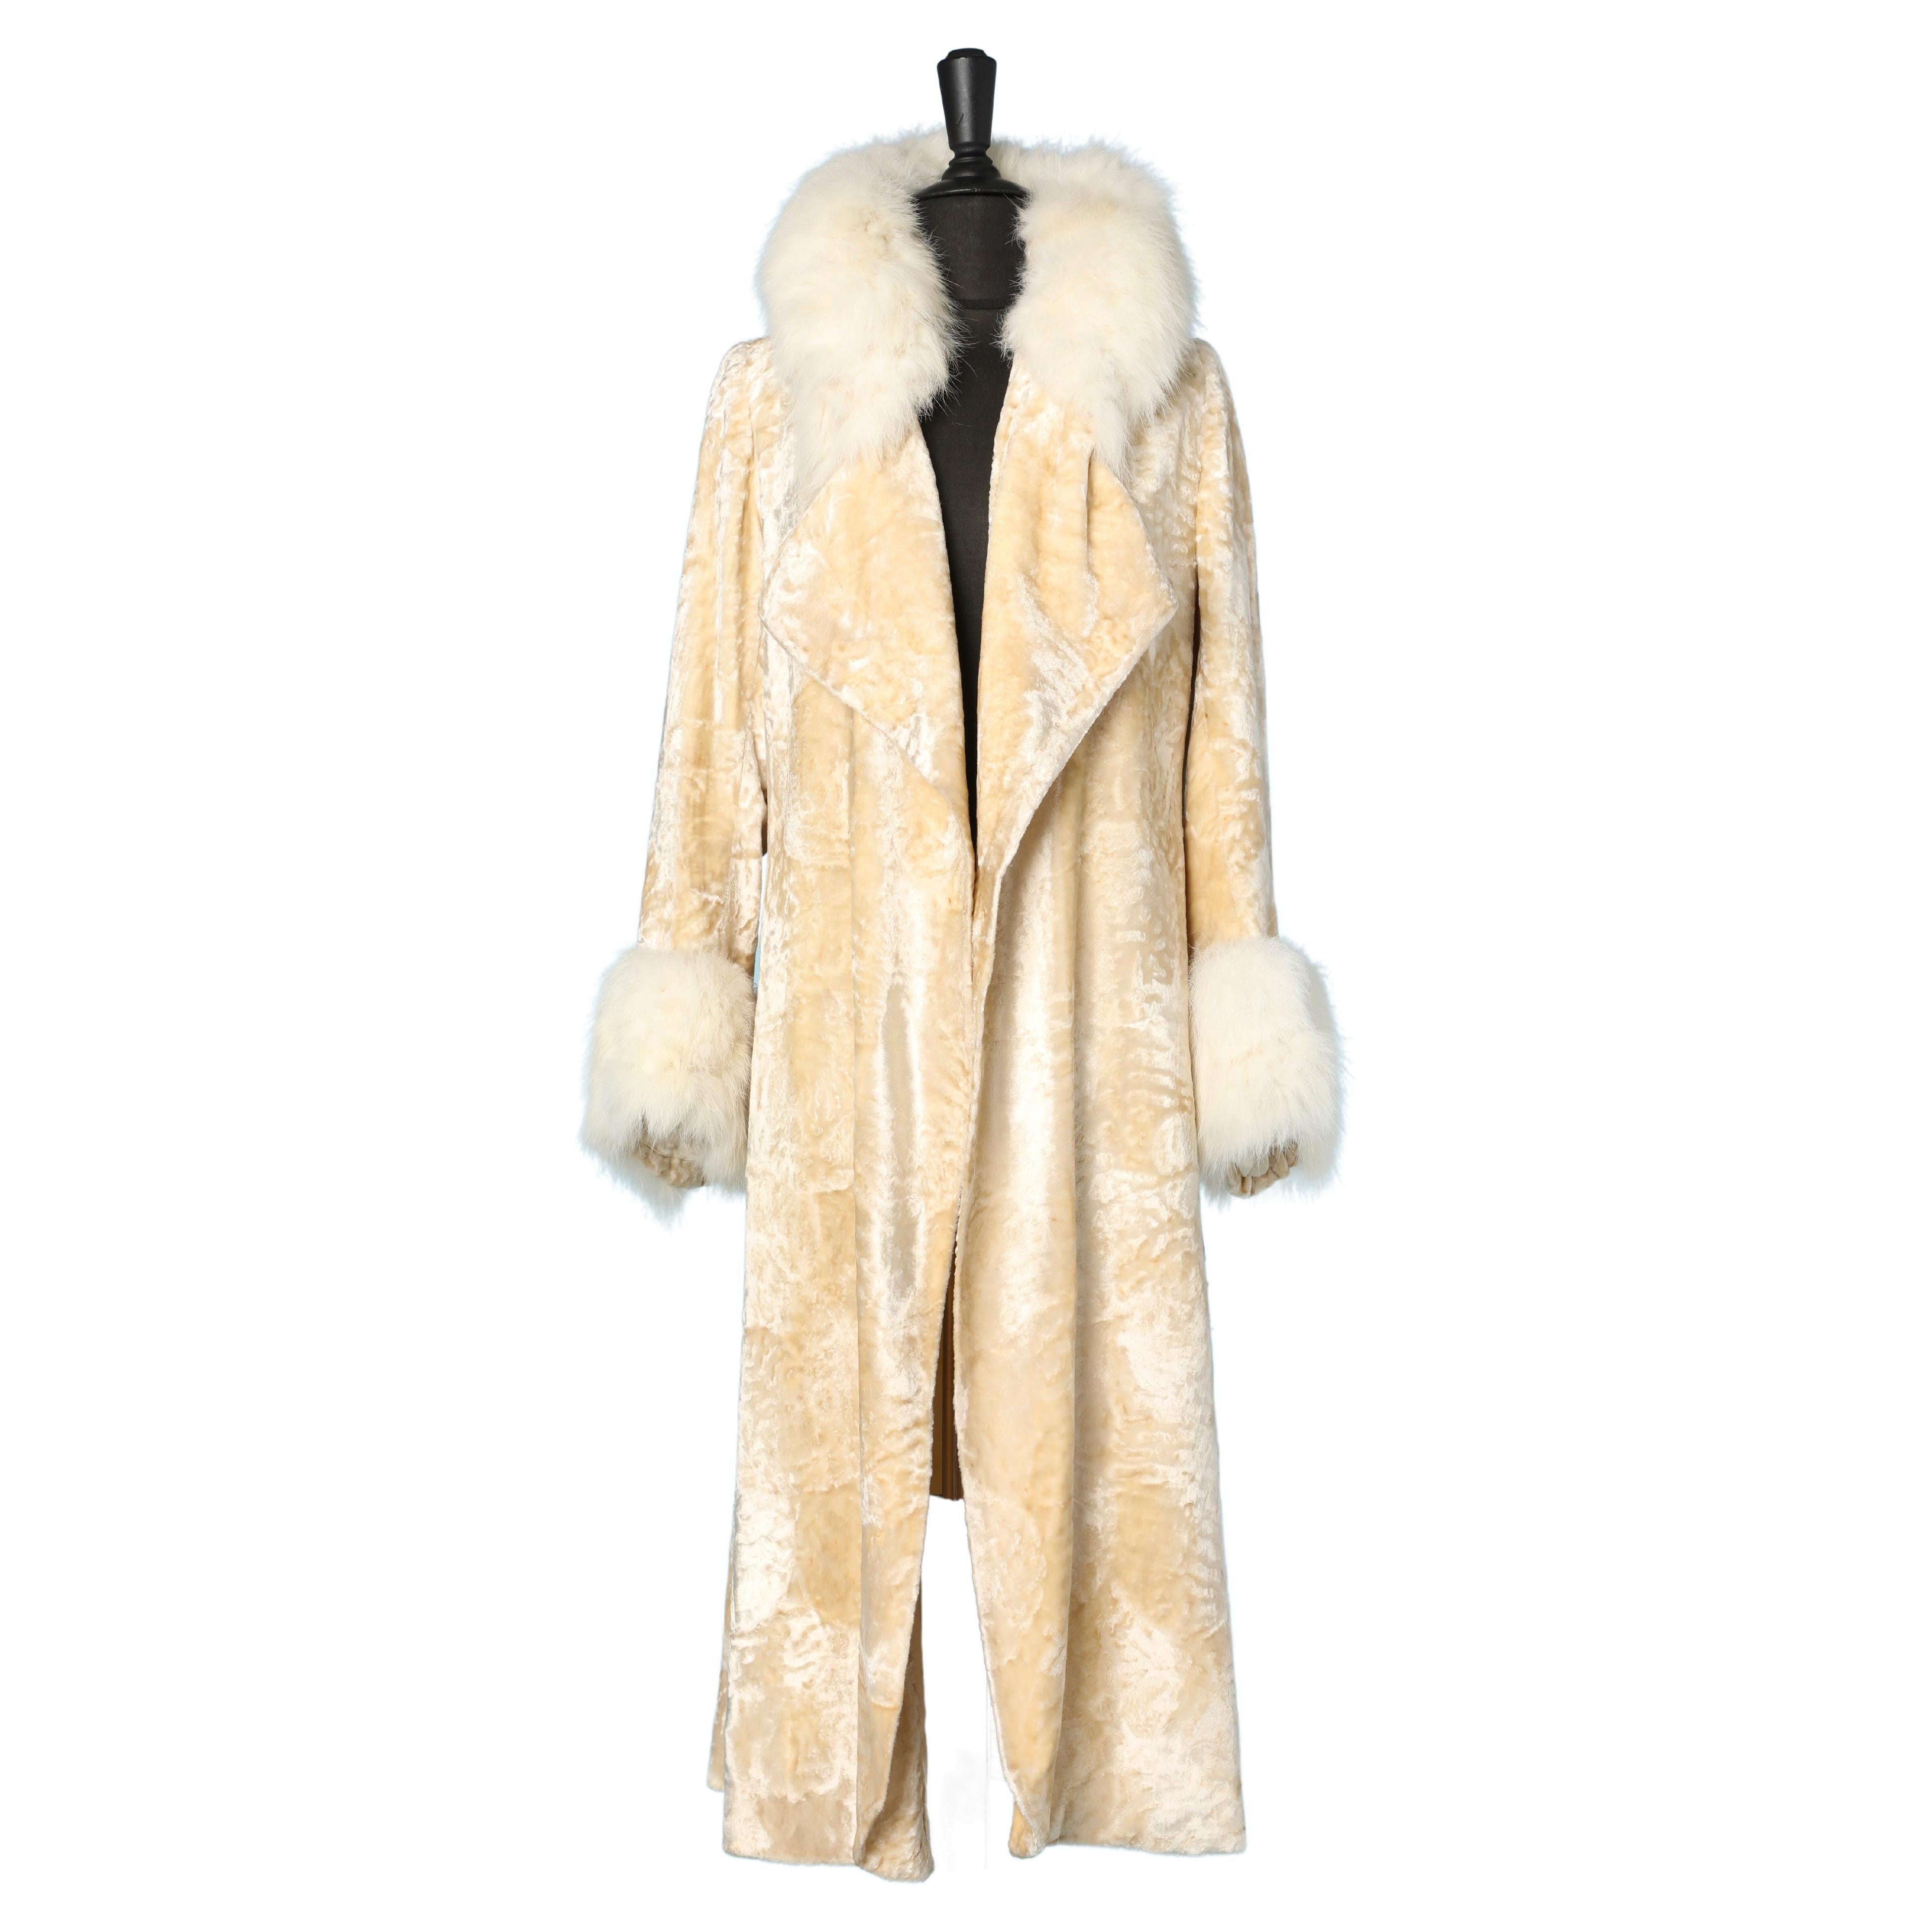 Off-white 1930's panne velvet coat with white furs collar Marshall Snelgrove